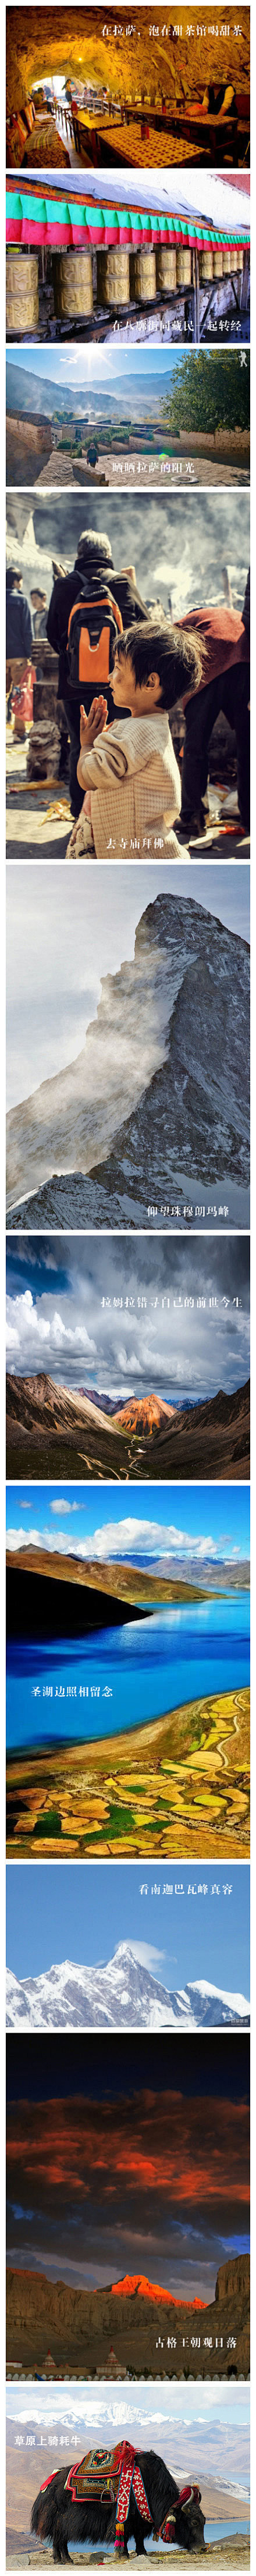 【去西藏不可错过的10件小事】1、在拉萨...